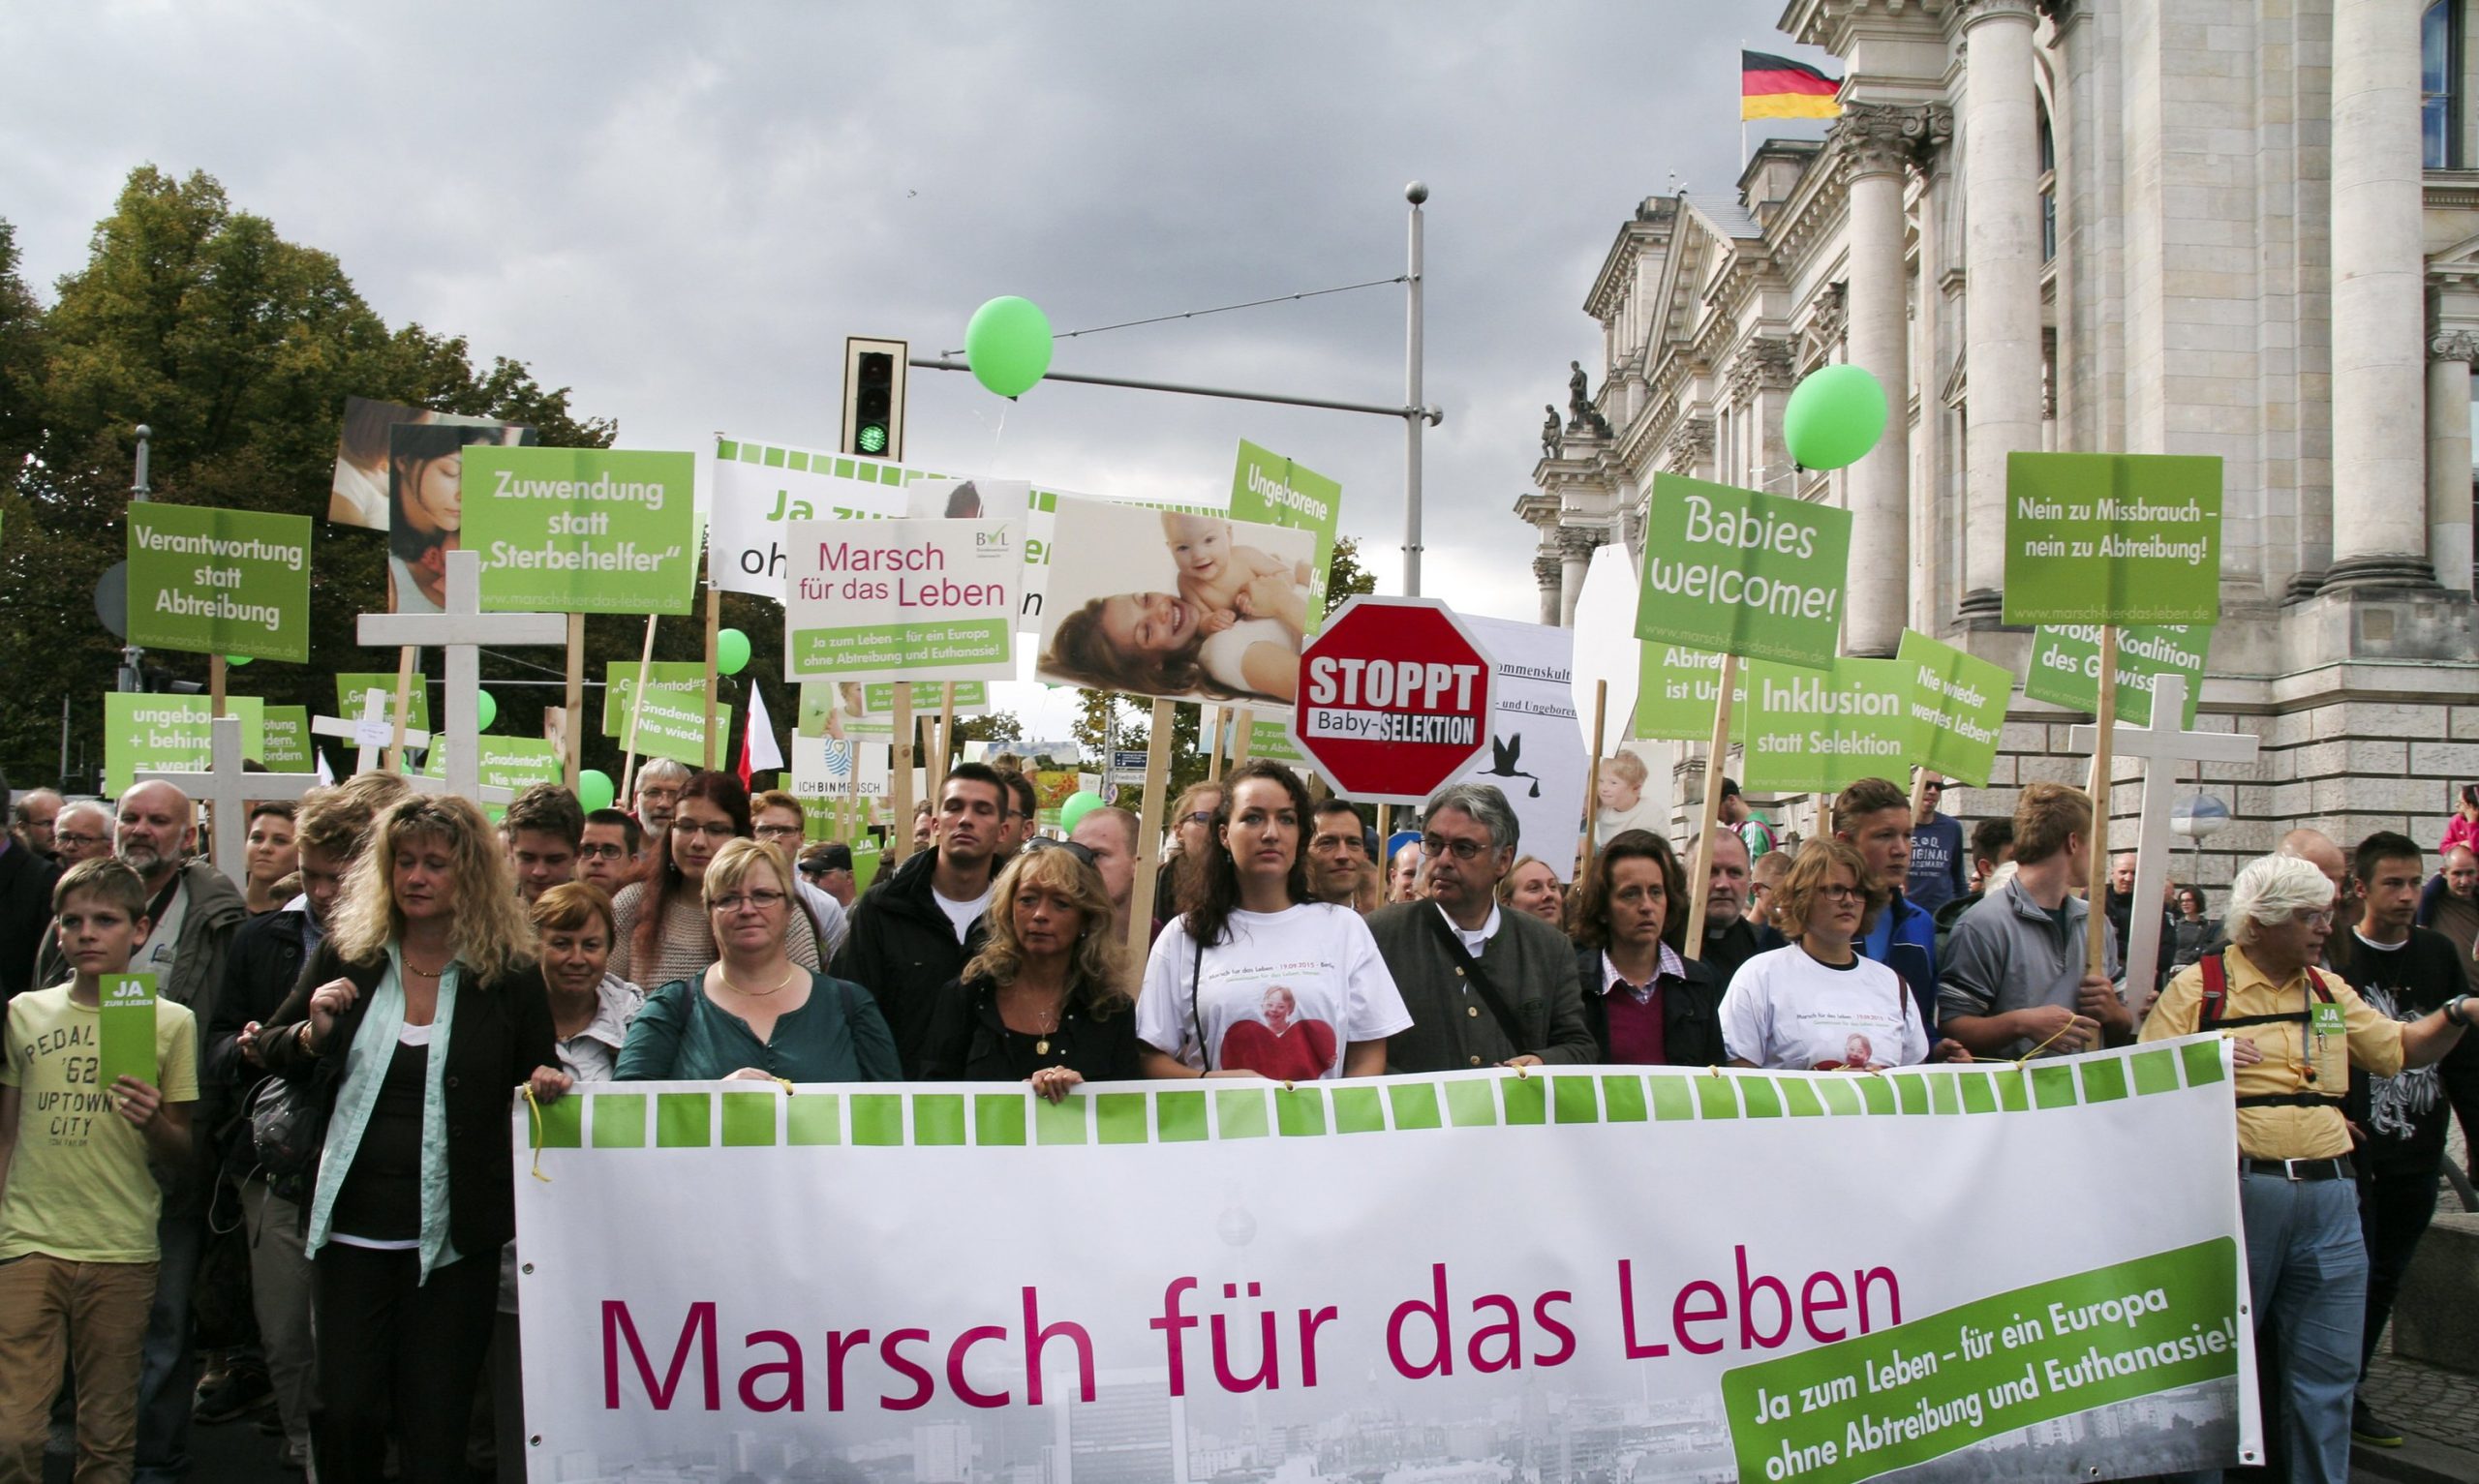 Im Jahr 2015 demonstrierten konservative Christen vor dem Berliner Reichtstag gegen das ihrer Ansicht nach zu laxe Abtreibungsgesetz. In der ersten Reihe sieht man auch die AfD-Politikerin Beatrix von Storch